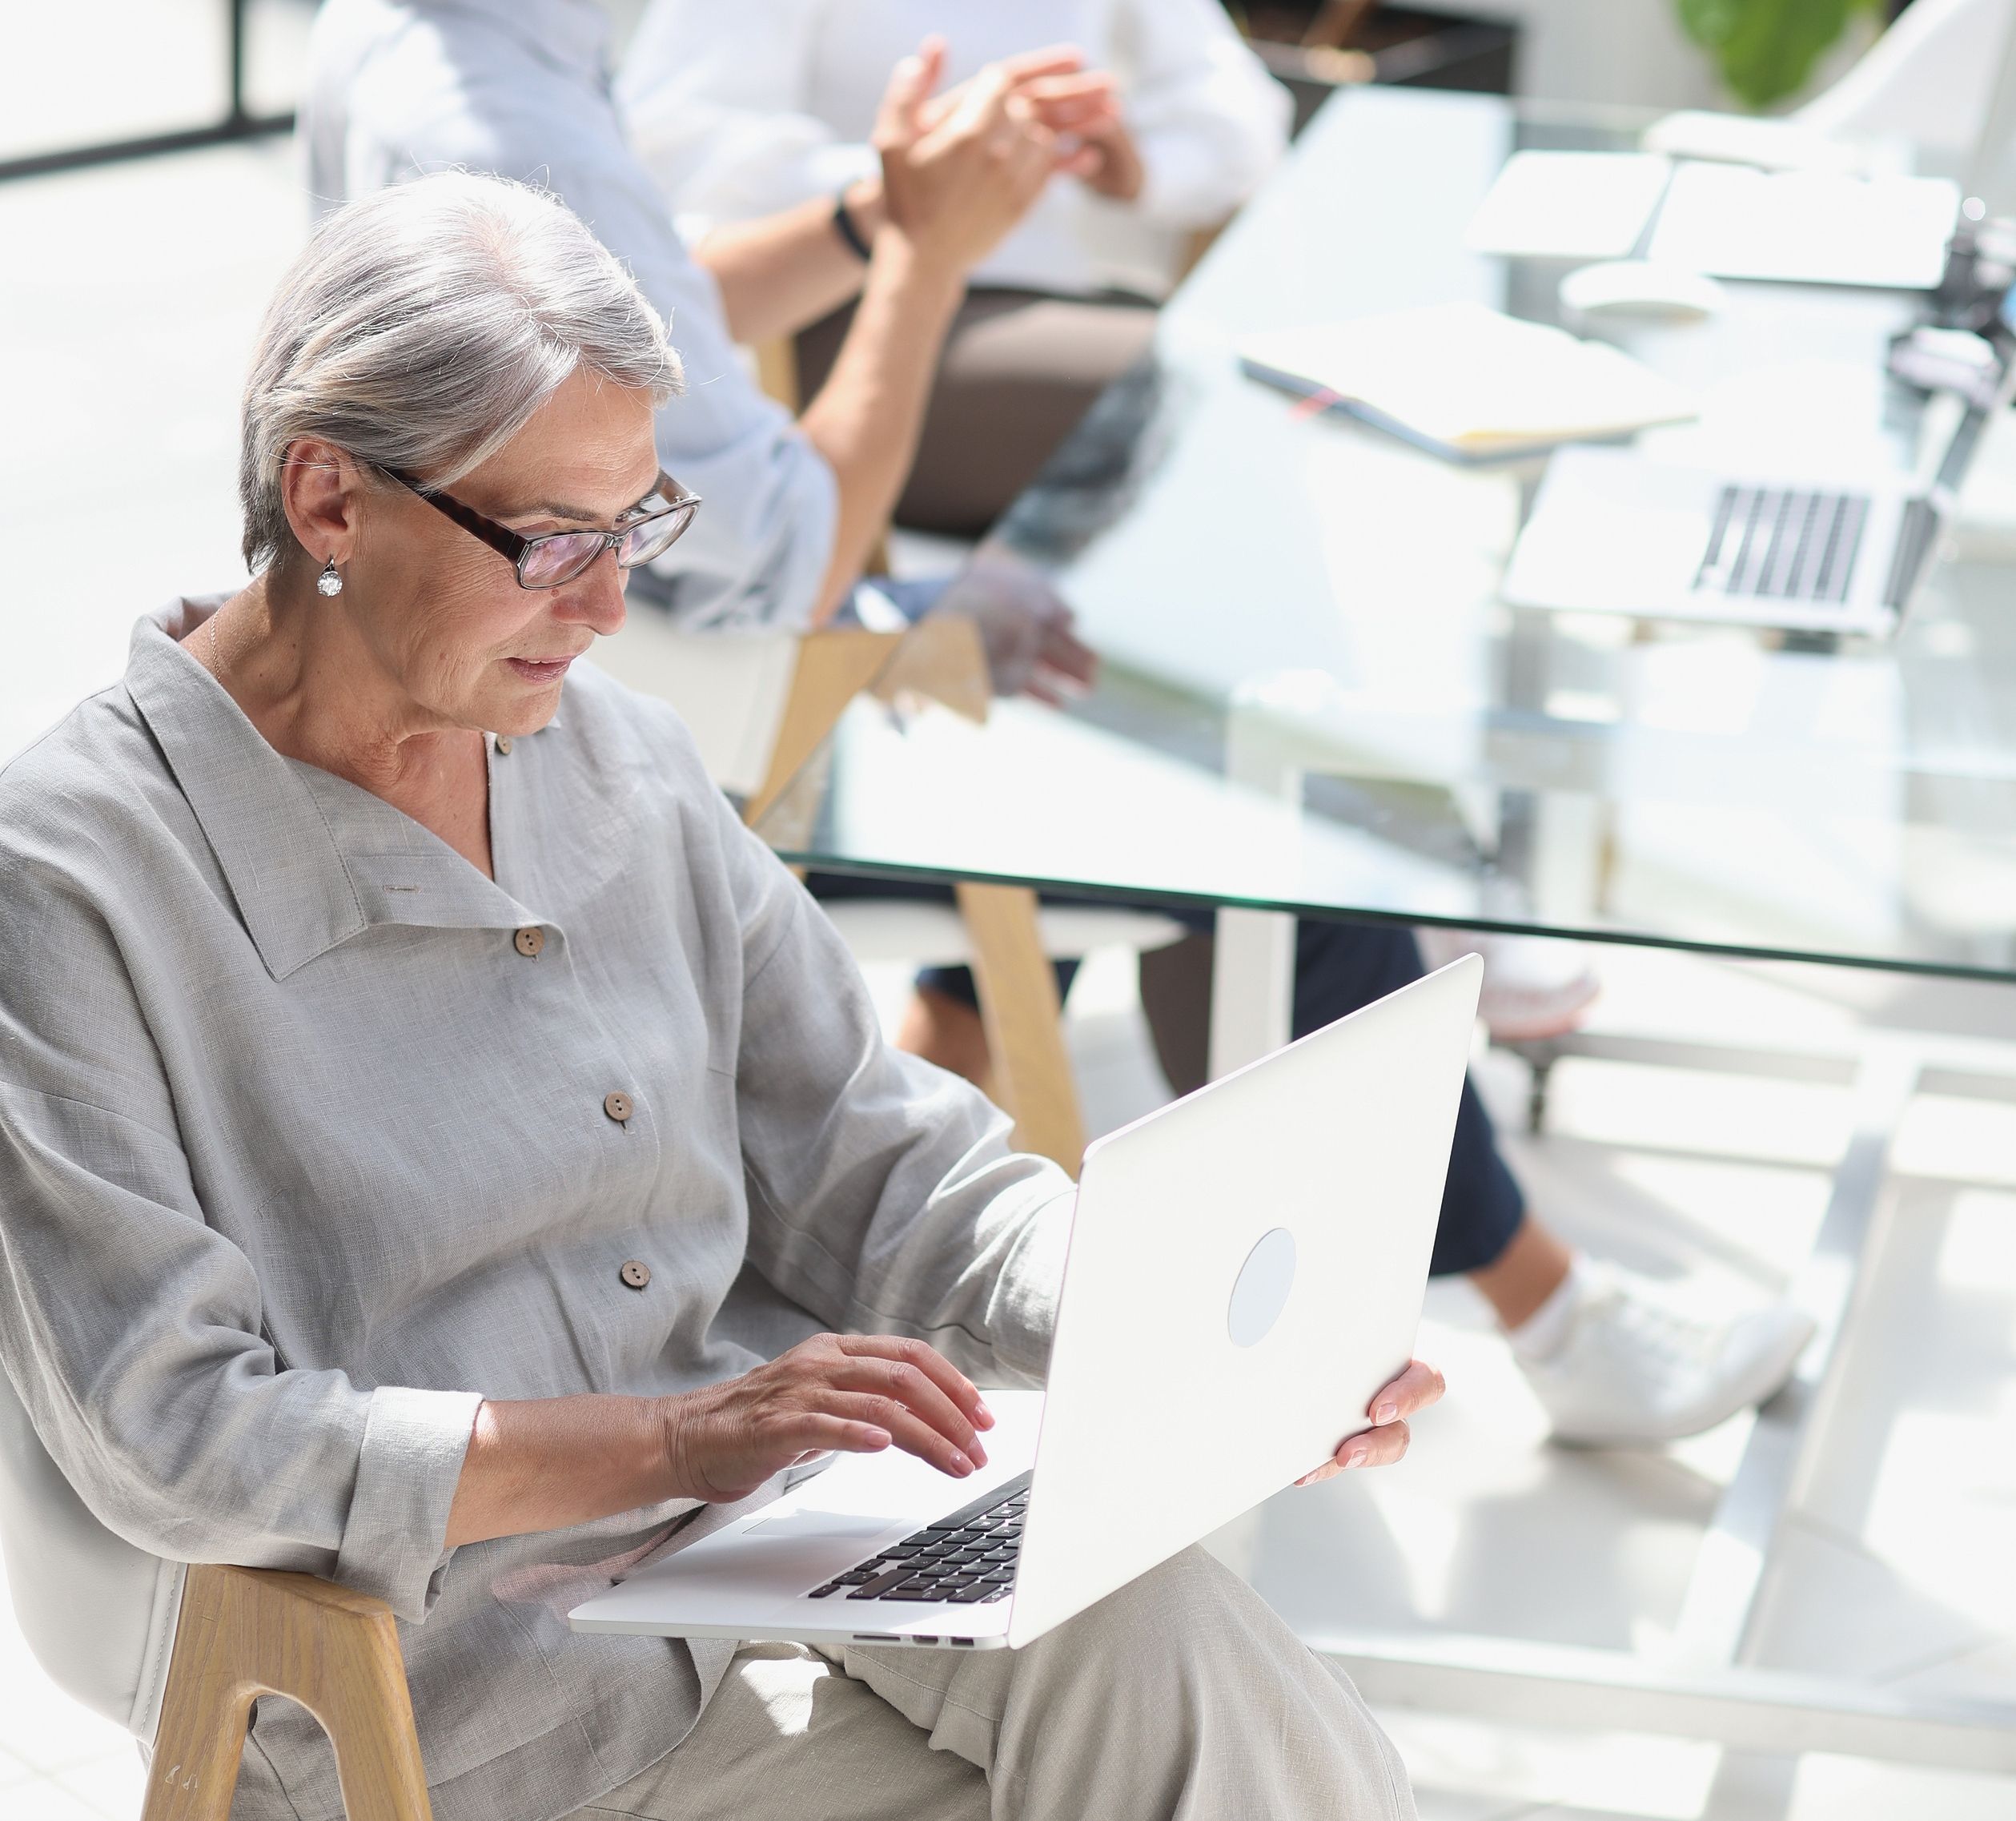 La jubilación se retrasa: la edad real del retiro sube a 65 años, por las mujeres y autónomos